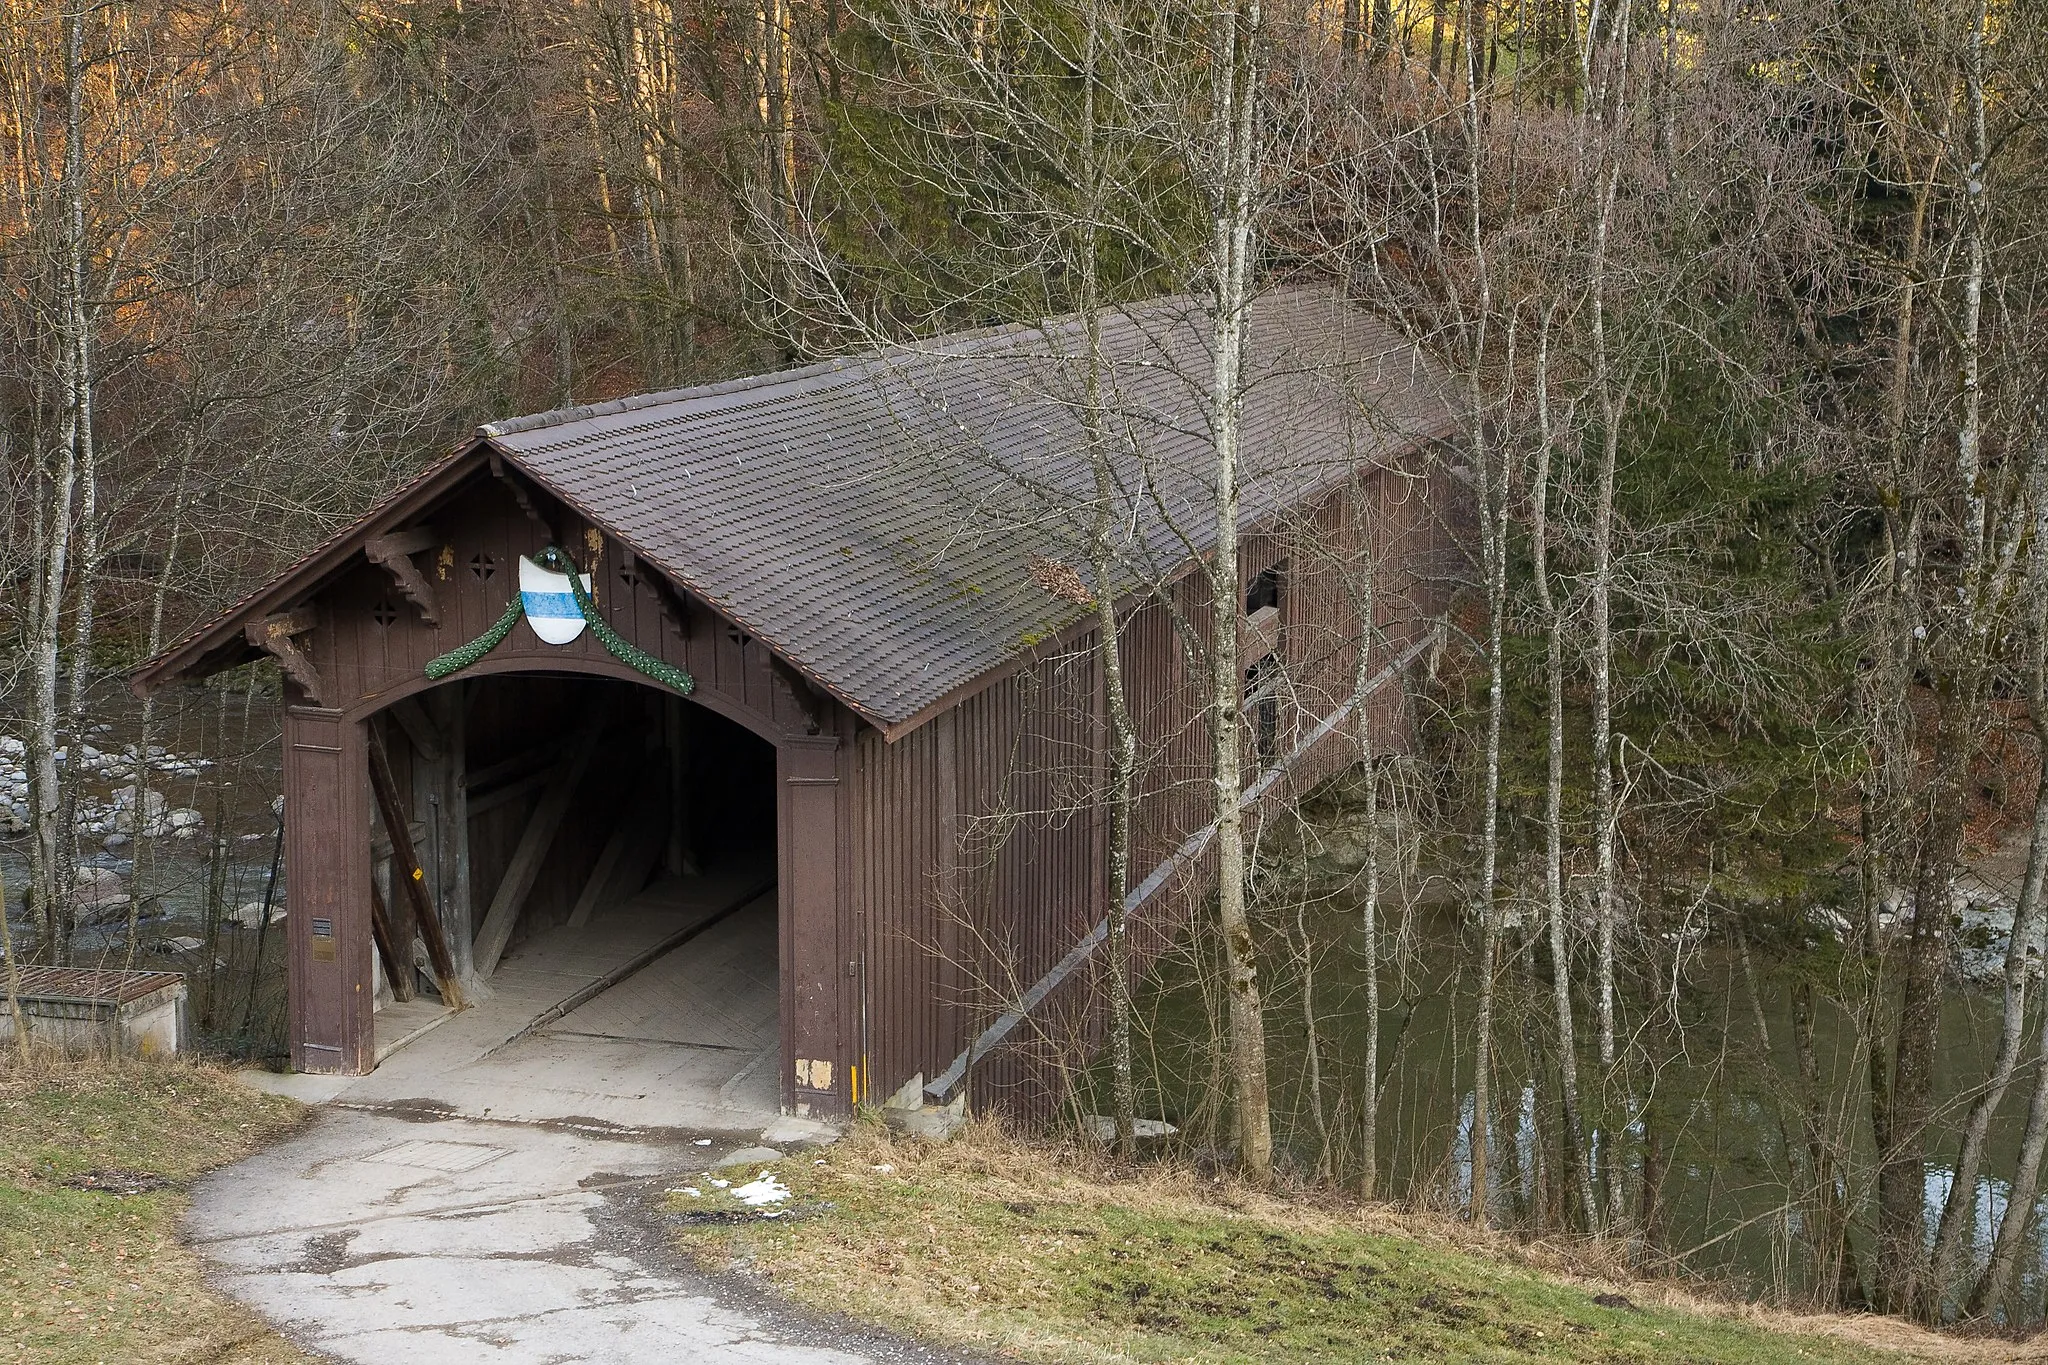 Photo showing: Die «Babenwaag» in Sihlbrugg vom Zuger Ufer (Gemeinde Neuheim) gesehen erbaut 1847 nach Plänen von Ferdinand Stadler Die Babenwaag war die Verbindungsbrücke zwischen Zürich und Zug, bis sie 1960 durch eine leistungsfähigere Betonbrücke ersetzt wurde. Die Holzbrücke wurde sihlaufwärts verschoben.